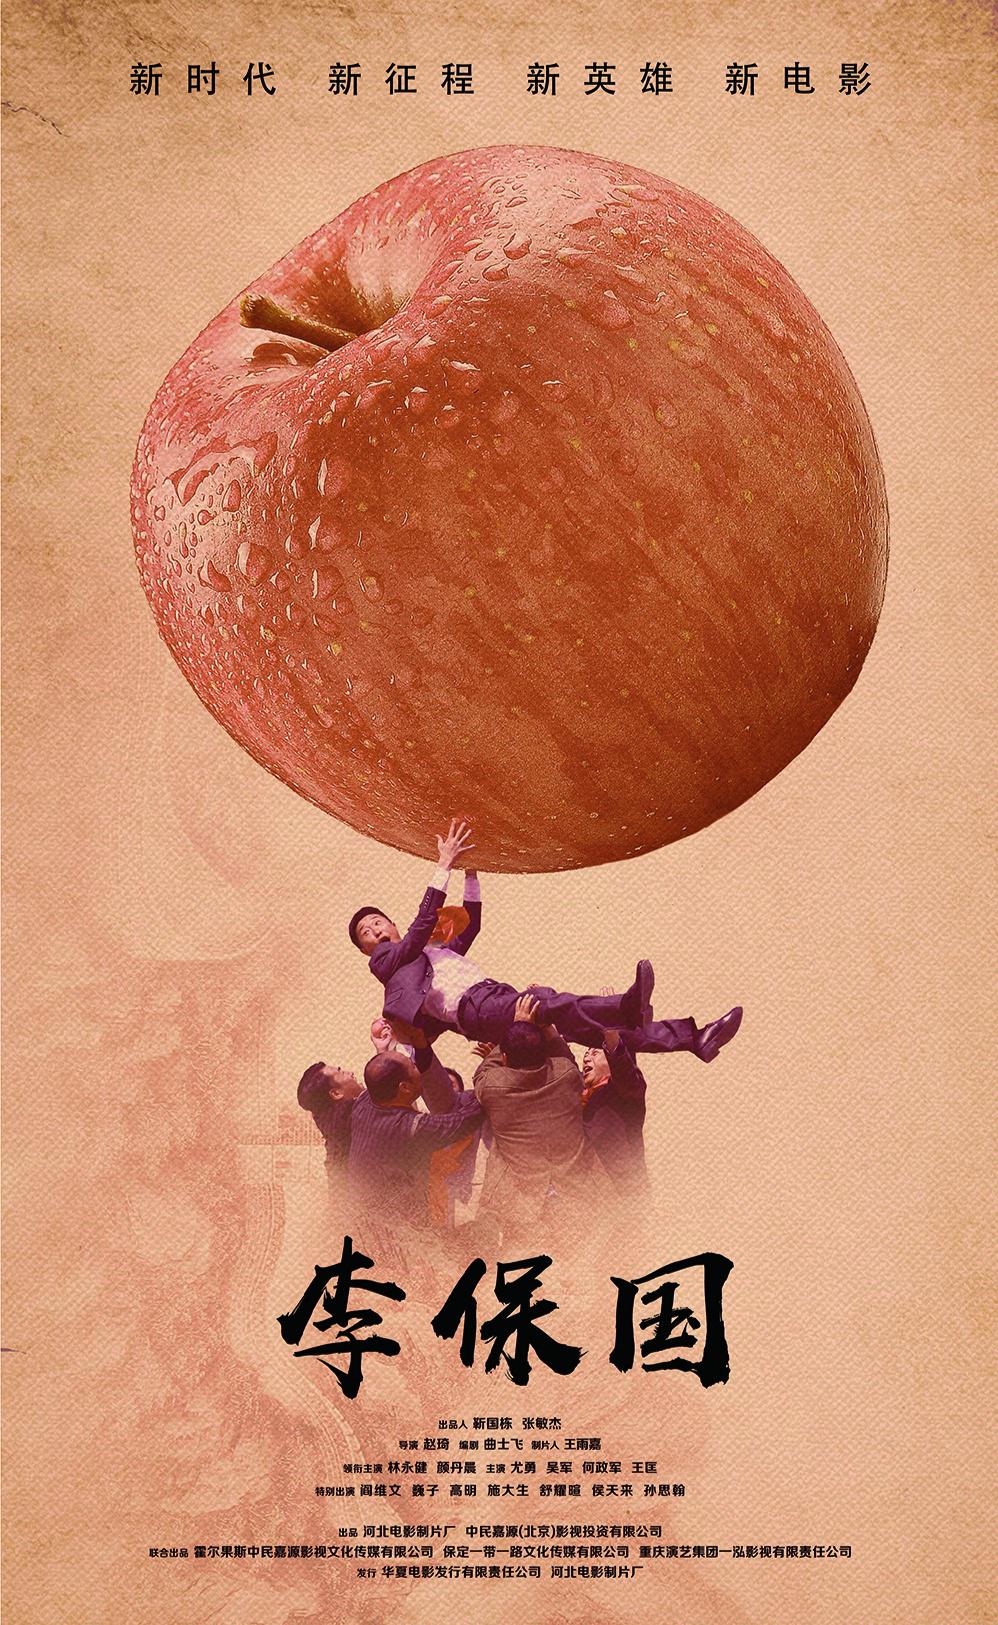 李保国 - The Taste of Apple